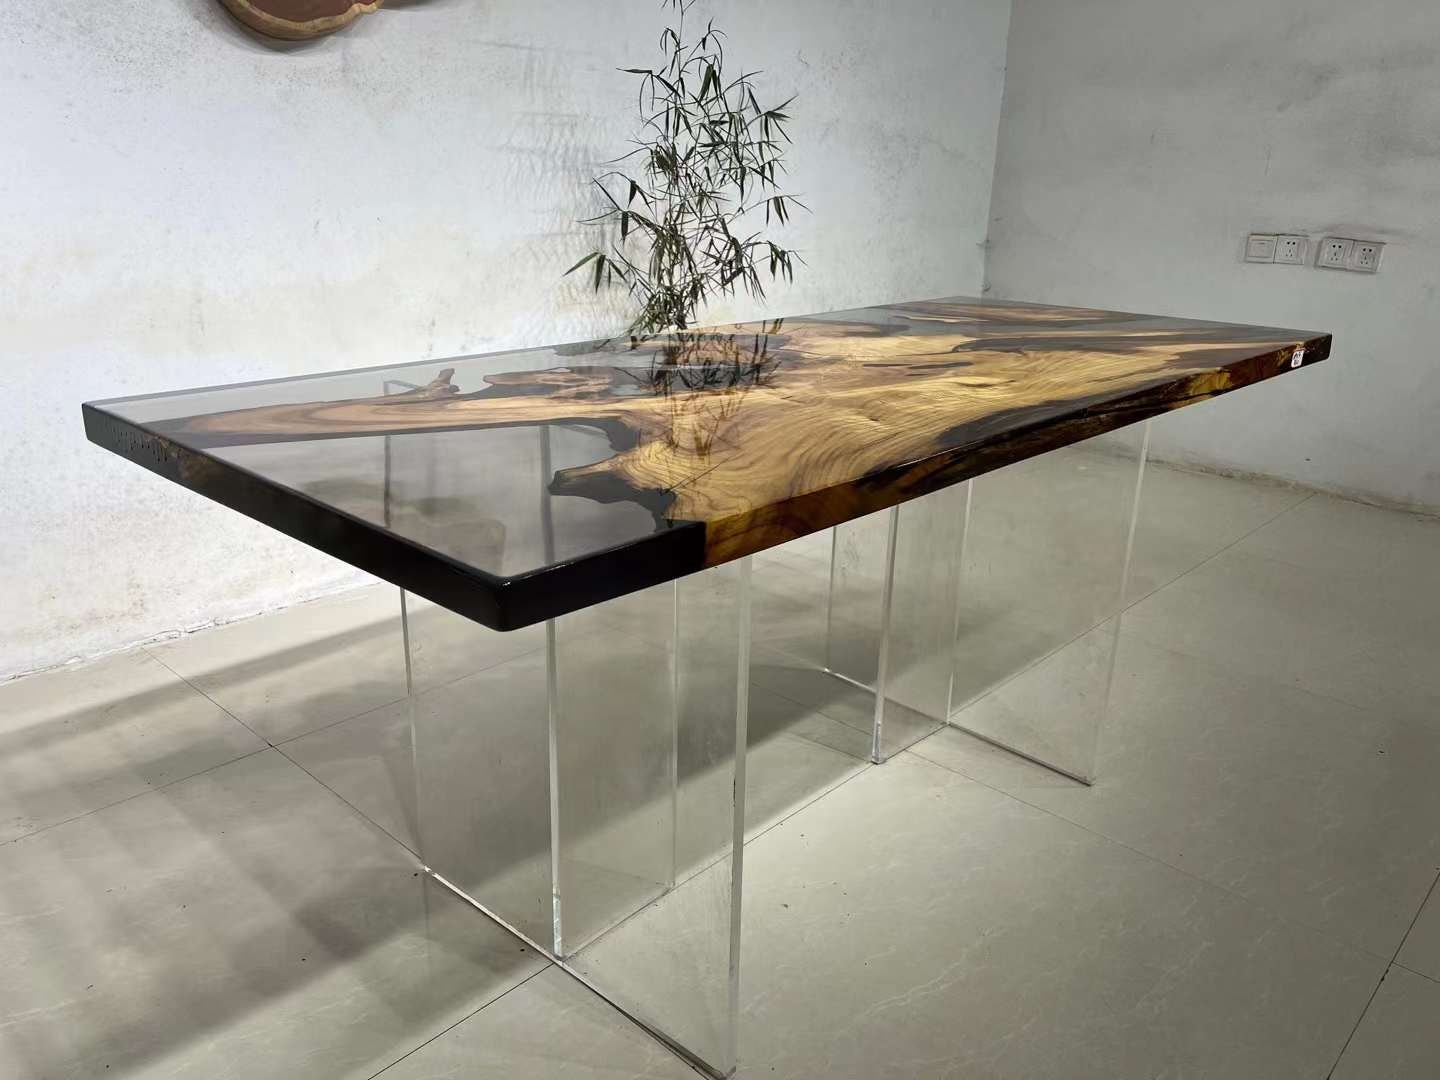 River Table, madera de alcanfor con resina epoxi negra, mesa consola, escritorio de trabajo para computadora portátil